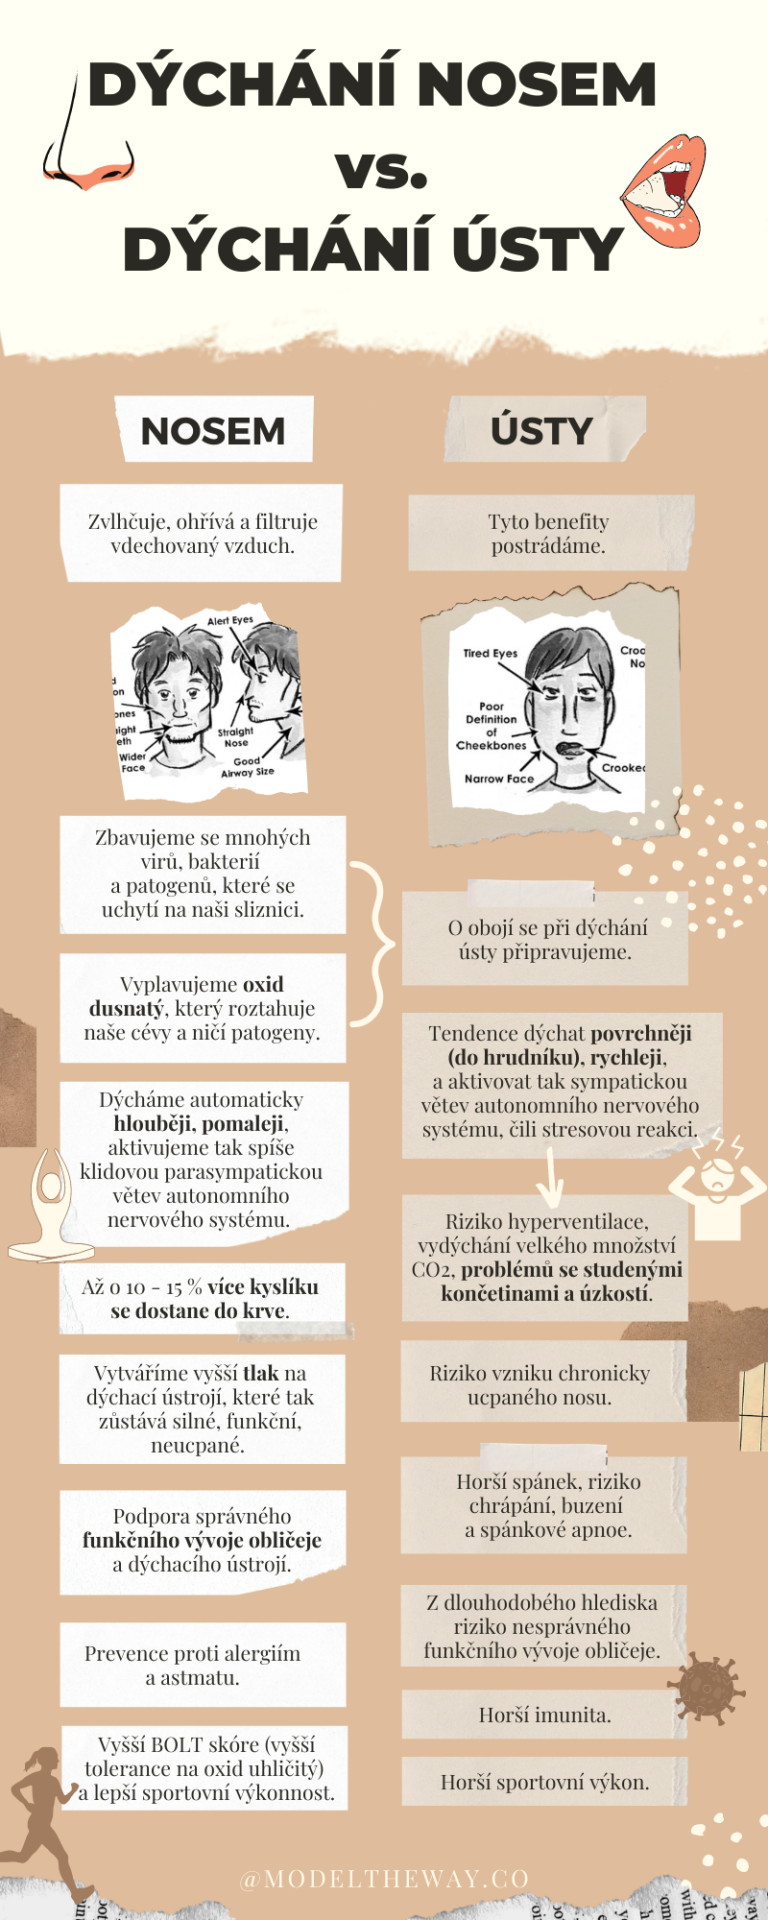 Rozdíly mezi dýcháním nosem a dýcháním ústy